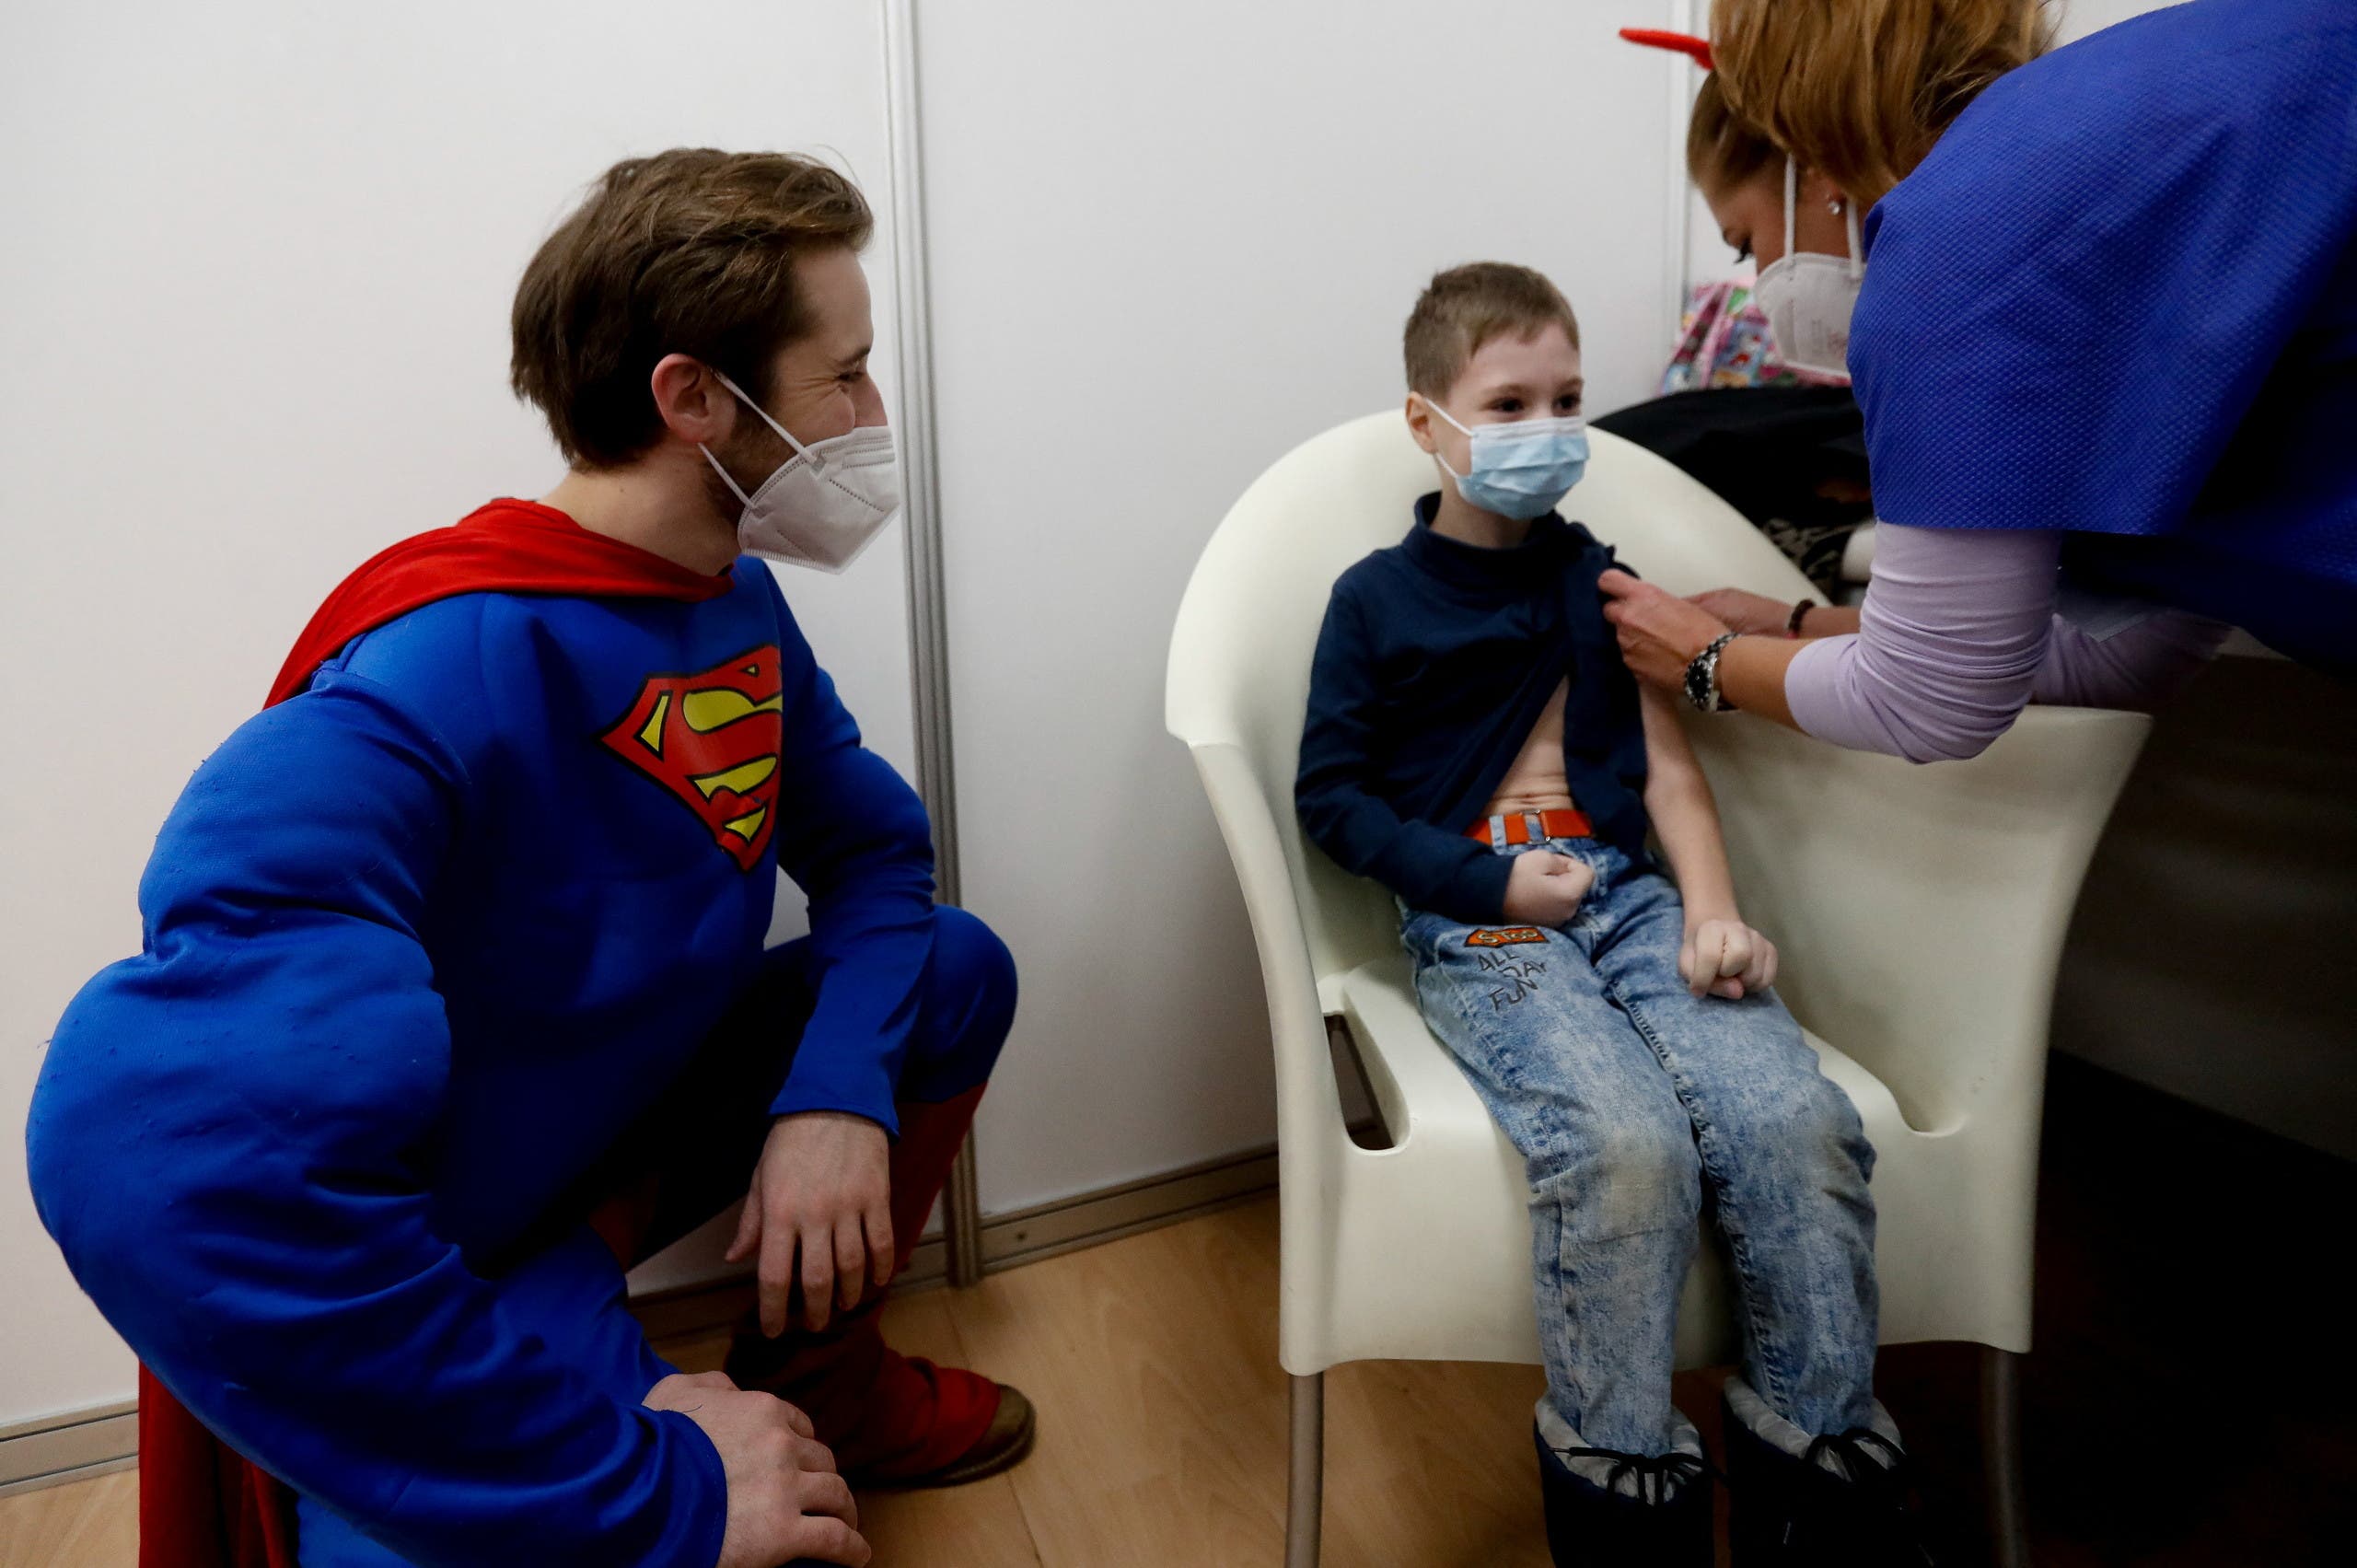 سوبرمان يراقب أحد الأطفال خلال تلقيه اللقاح